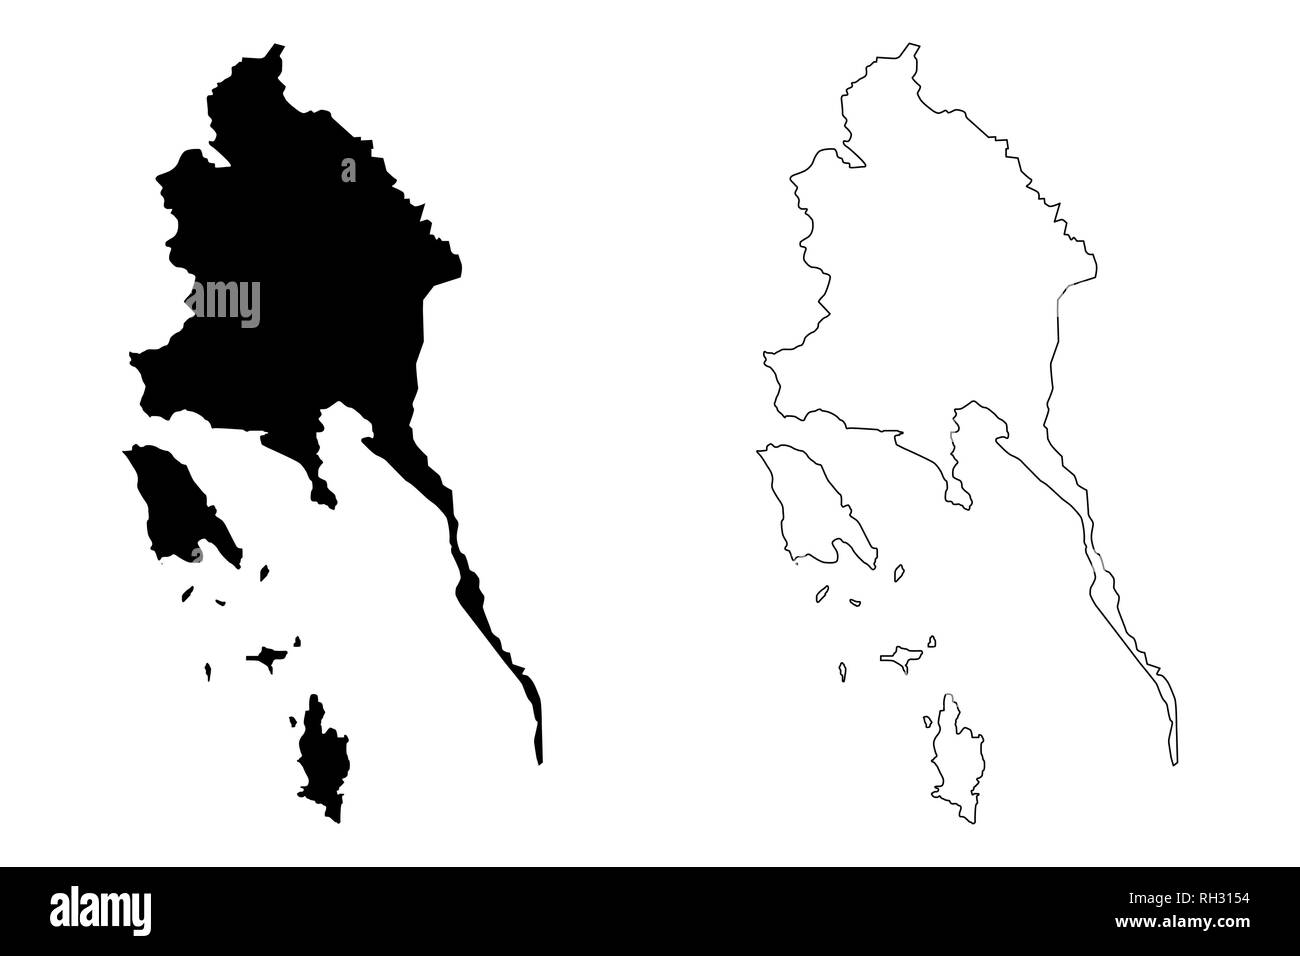 Trat Provinz (Königreich Thailand, Siam, Provinzen von Thailand) Karte Vektor-illustration, kritzeln Skizze trat Karte Stock Vektor